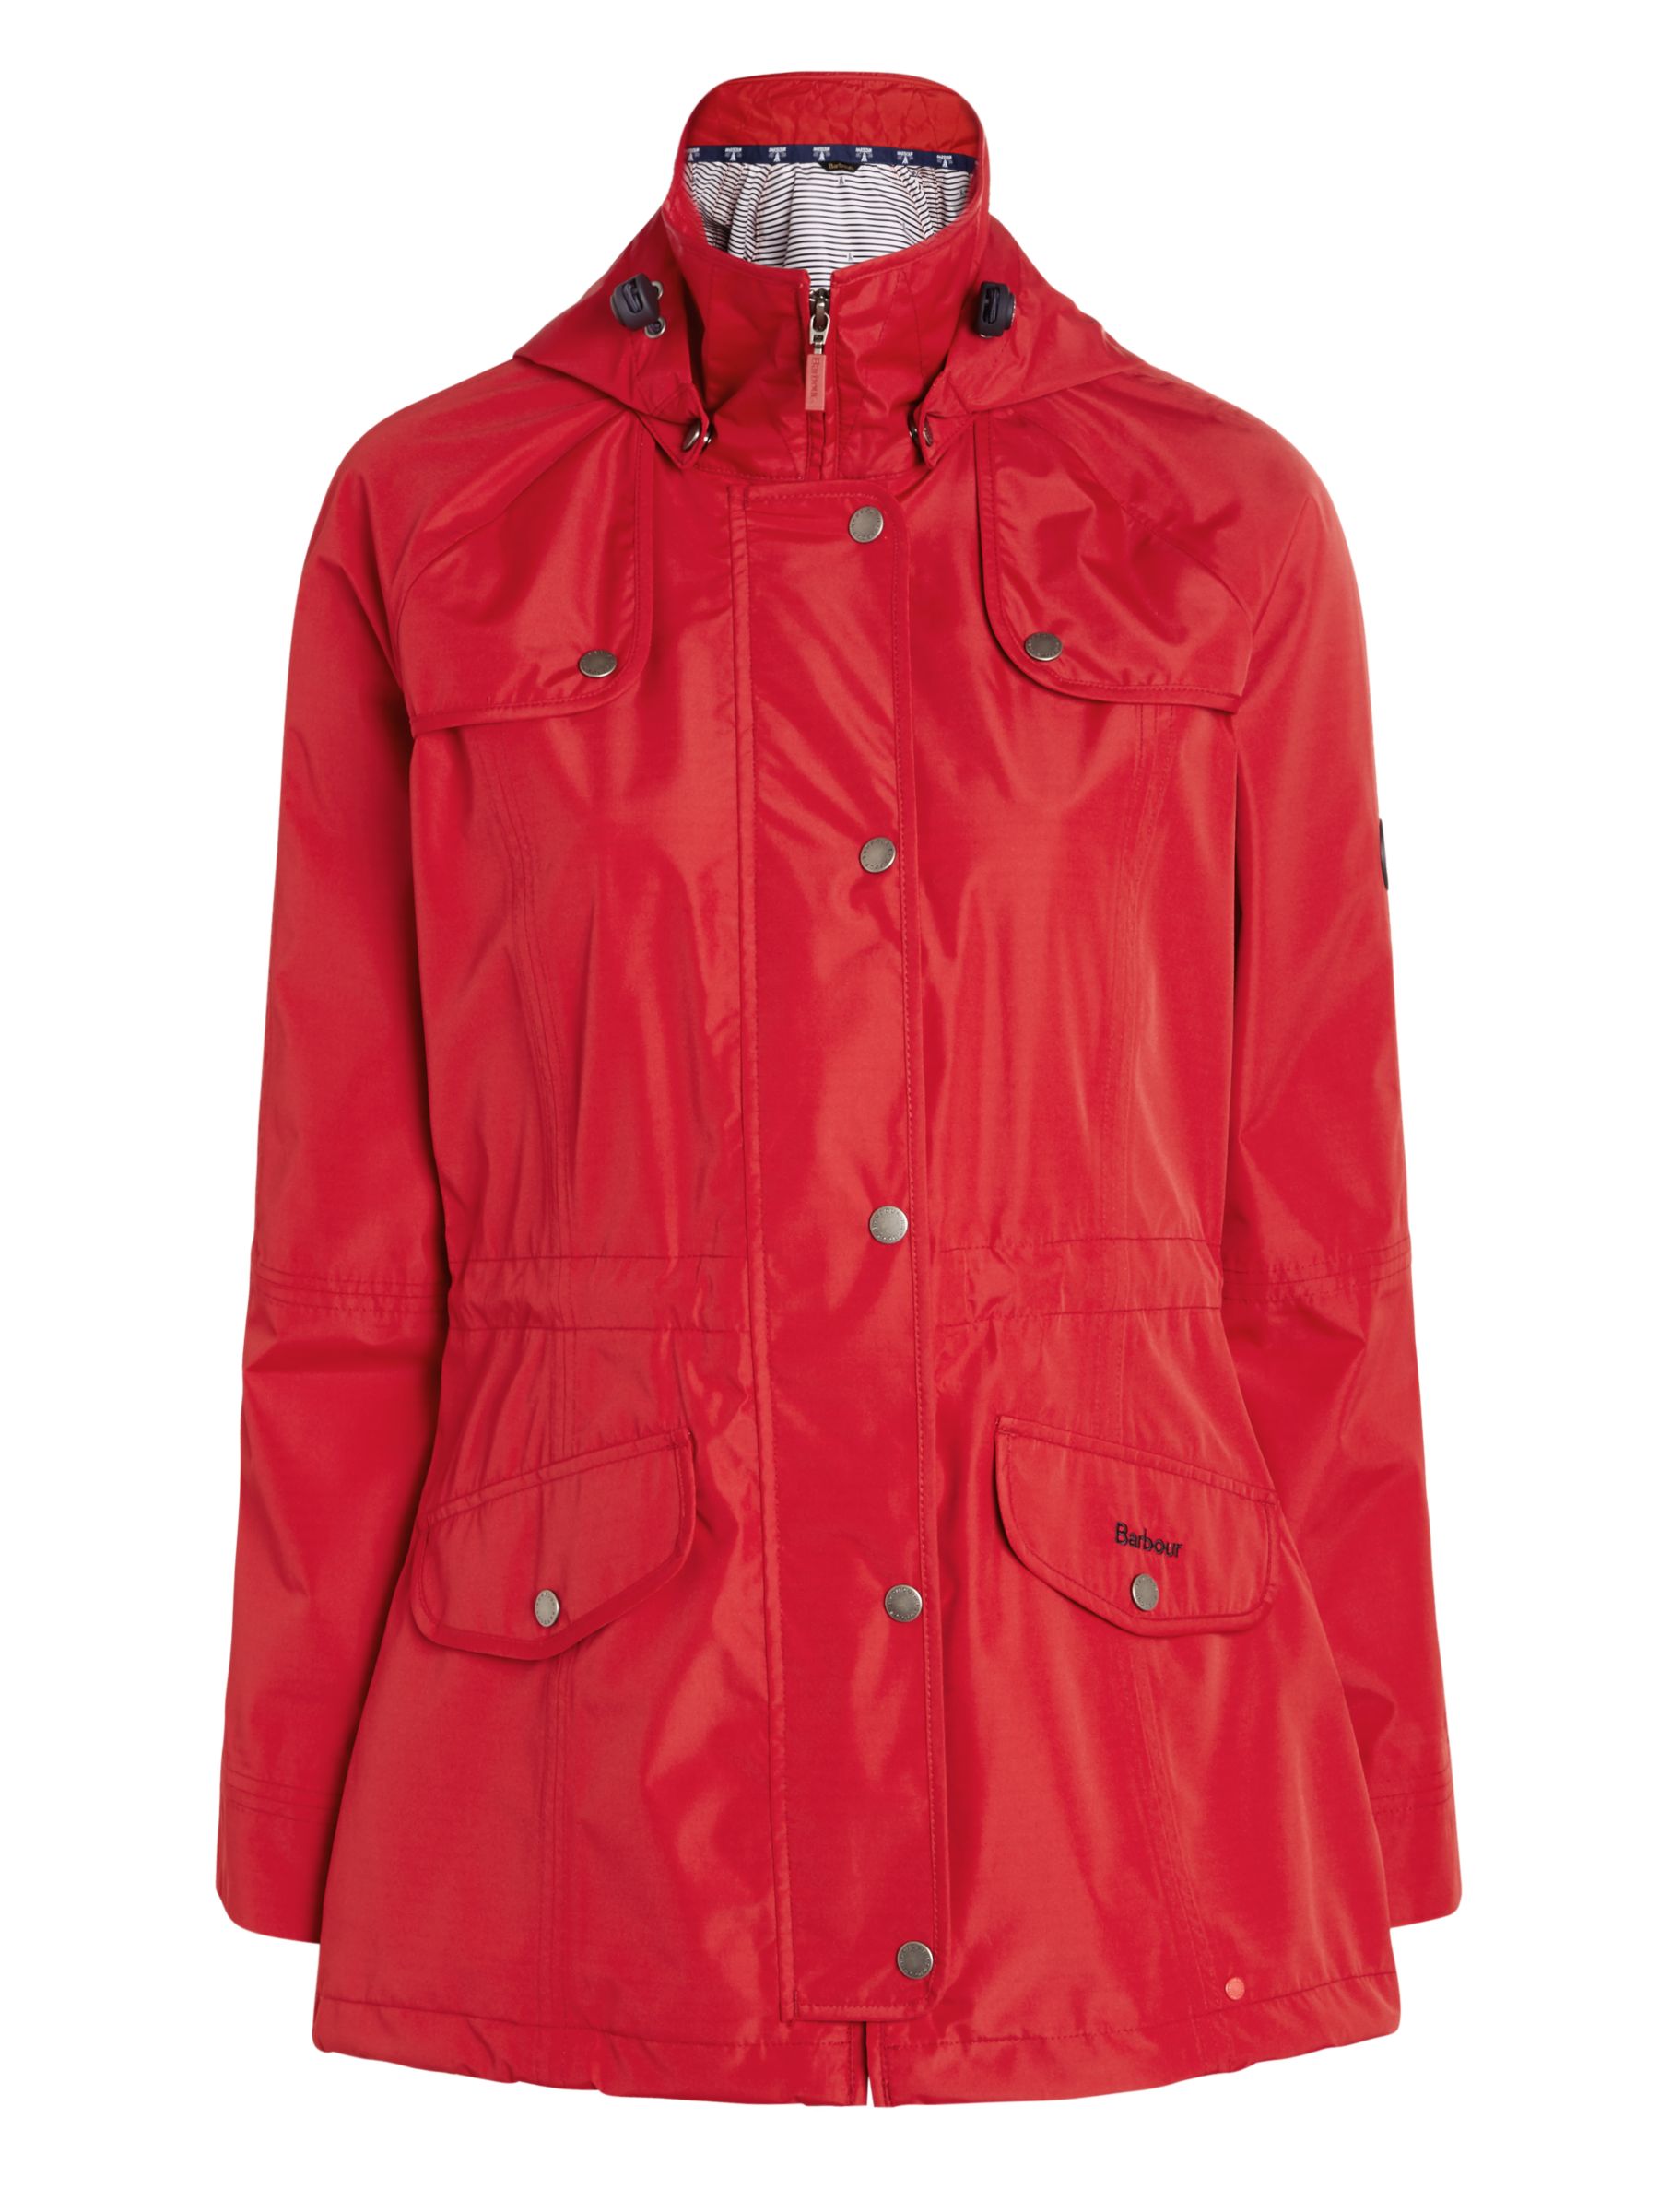 Barbour Trevose Waterproof Jacket, Red 